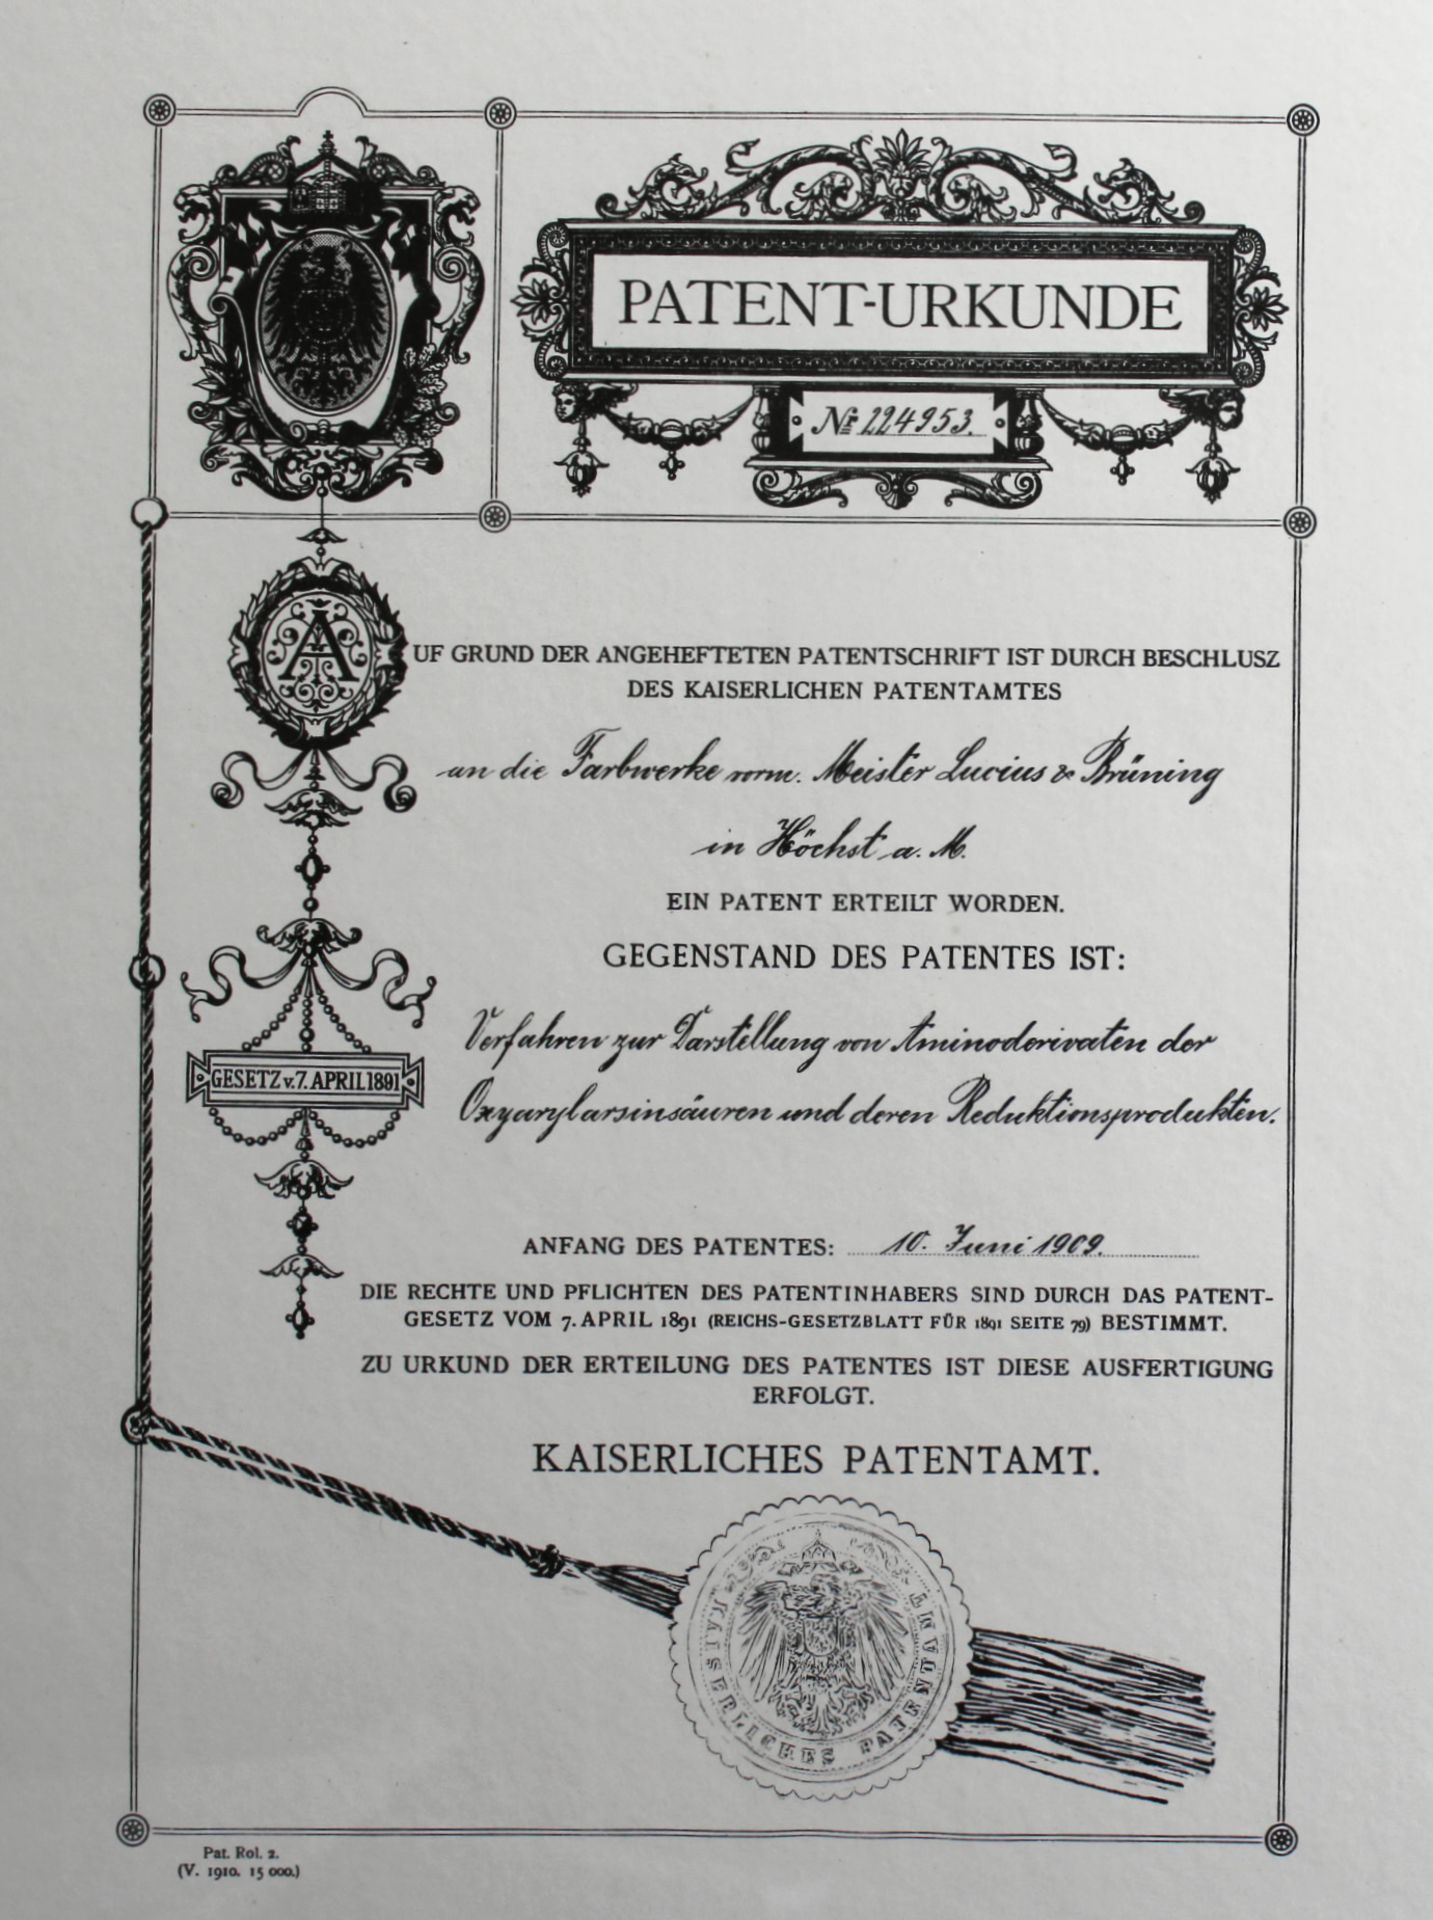 Kopie Patent-Urkunde d. Kaiserl. Patentamtes, Nr. 224953, Farbwerke in Hoechst ab 10.Juni 1909 - Bild 2 aus 2